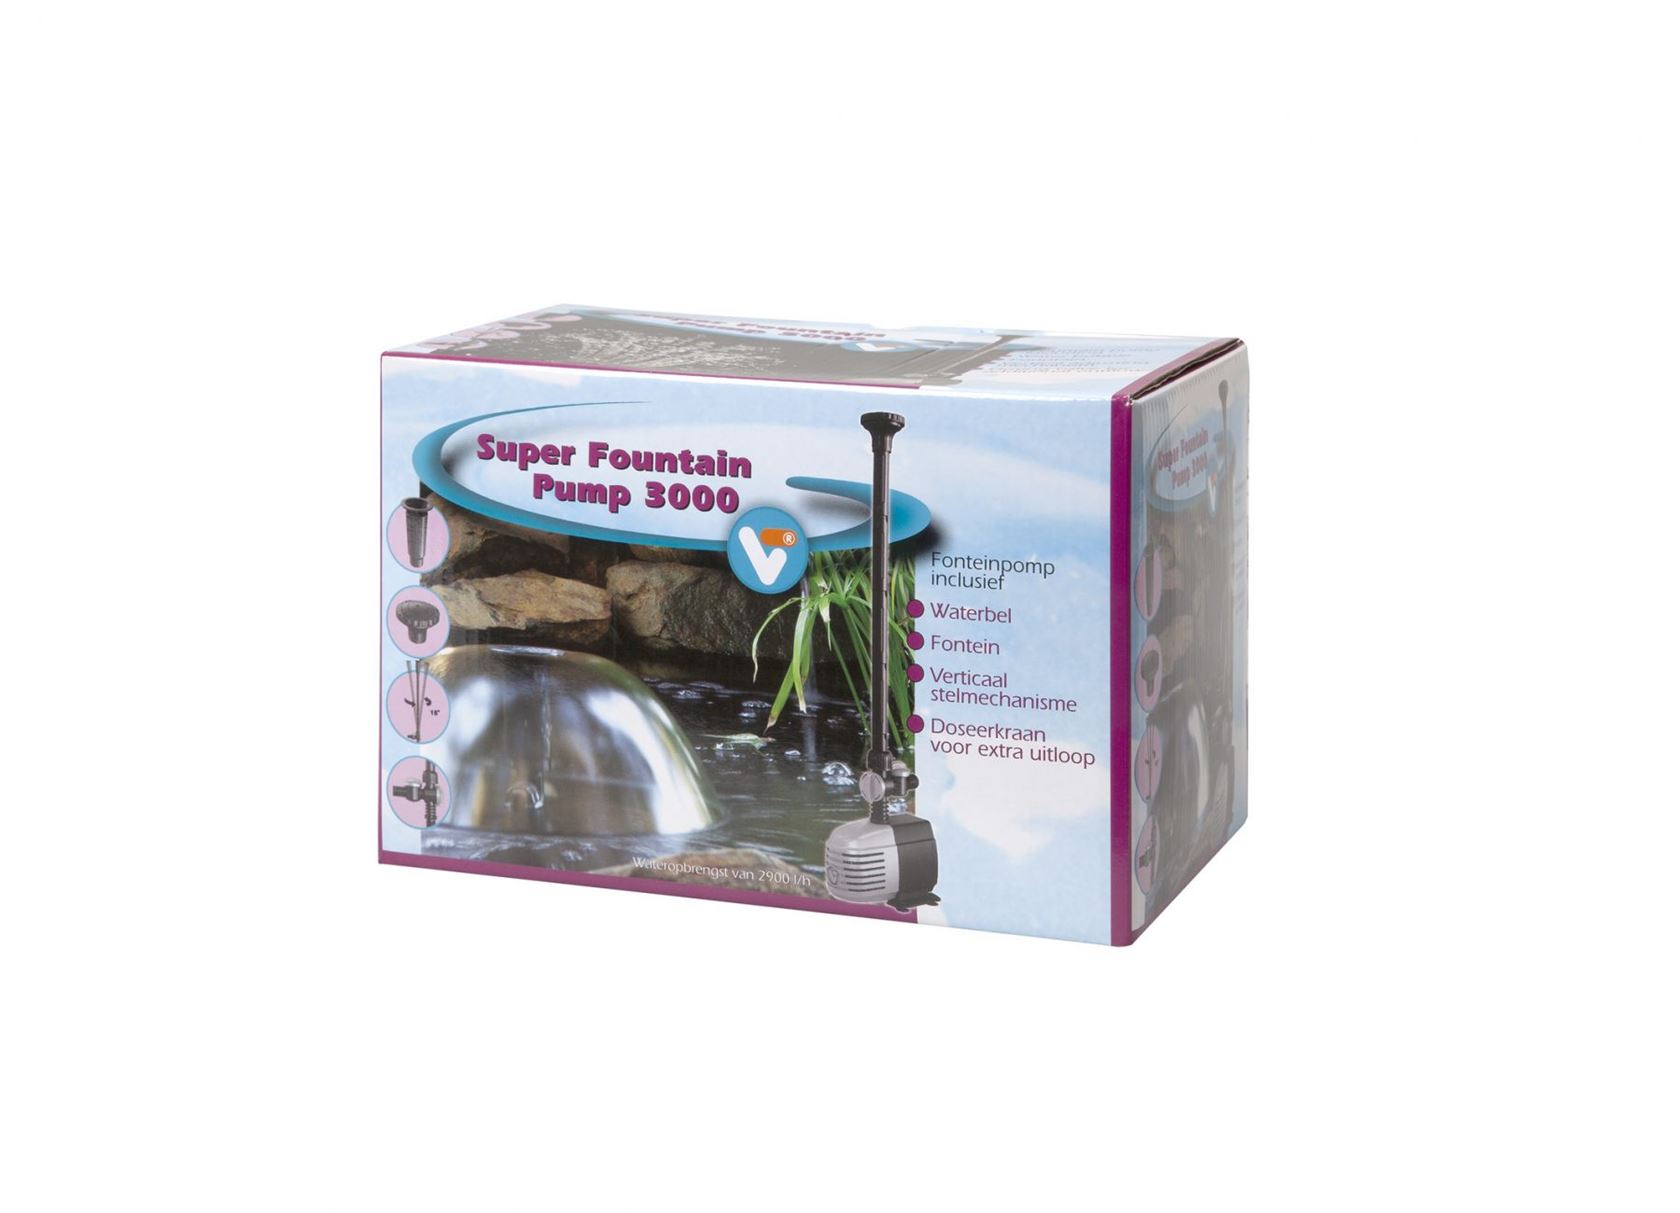 VT-Super-Fountain-Pump-3000-fonteinpomp-met-waterbel-en-fonteinkop